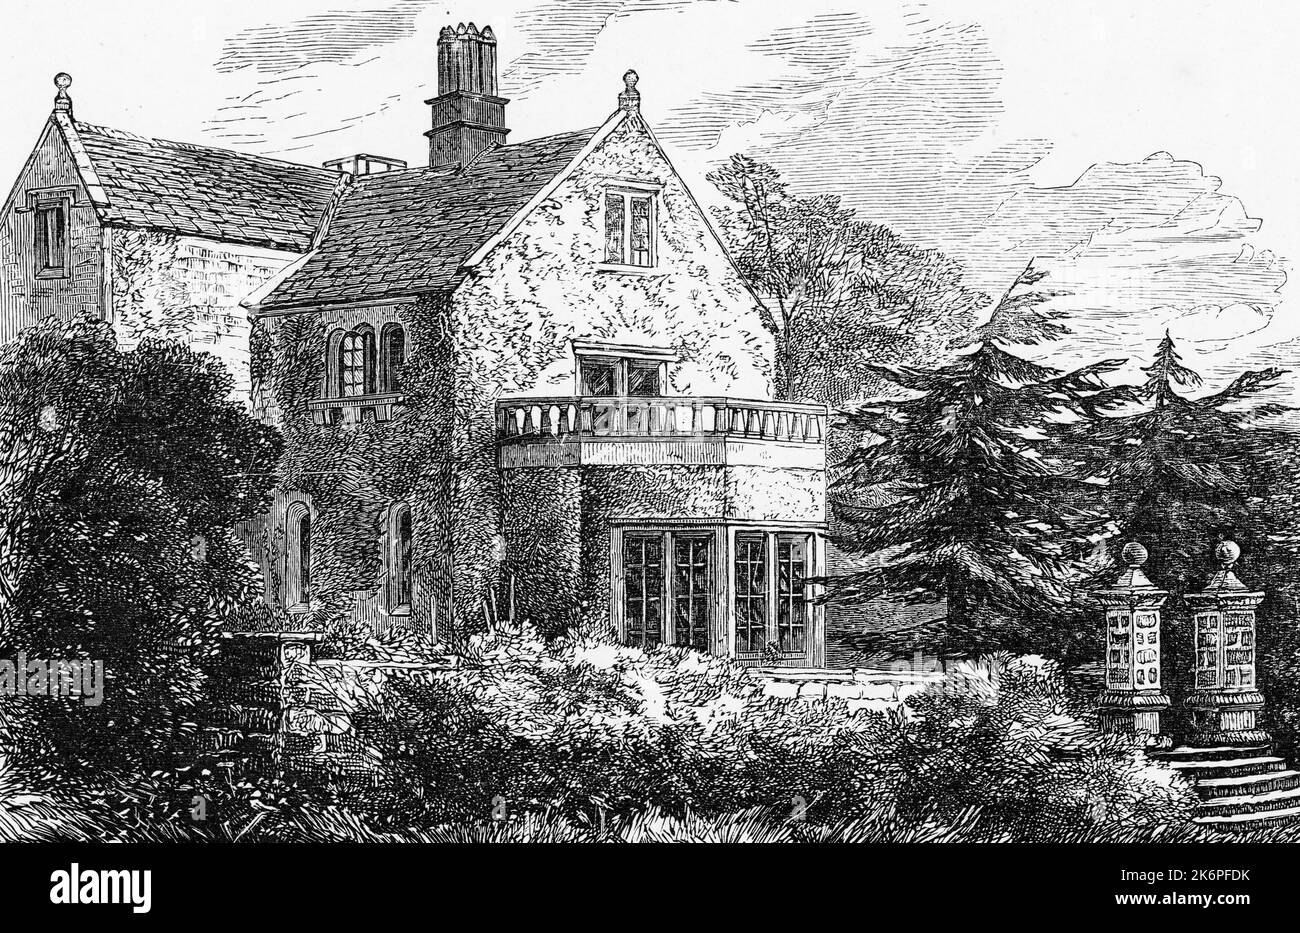 Lea Hurst, Derbyshire, c1911. Das Familienhaus von Florence Nightingale (1820-1910). Ursprünglich ein Bauernhaus aus dem 17.. Jahrhundert, wurde Lea Hurst von William Nightingale, dem Vater von Florence Nightingale, in den Jahren 1820 bis 21 zu einem Landhaus entwickelt. Stockfoto